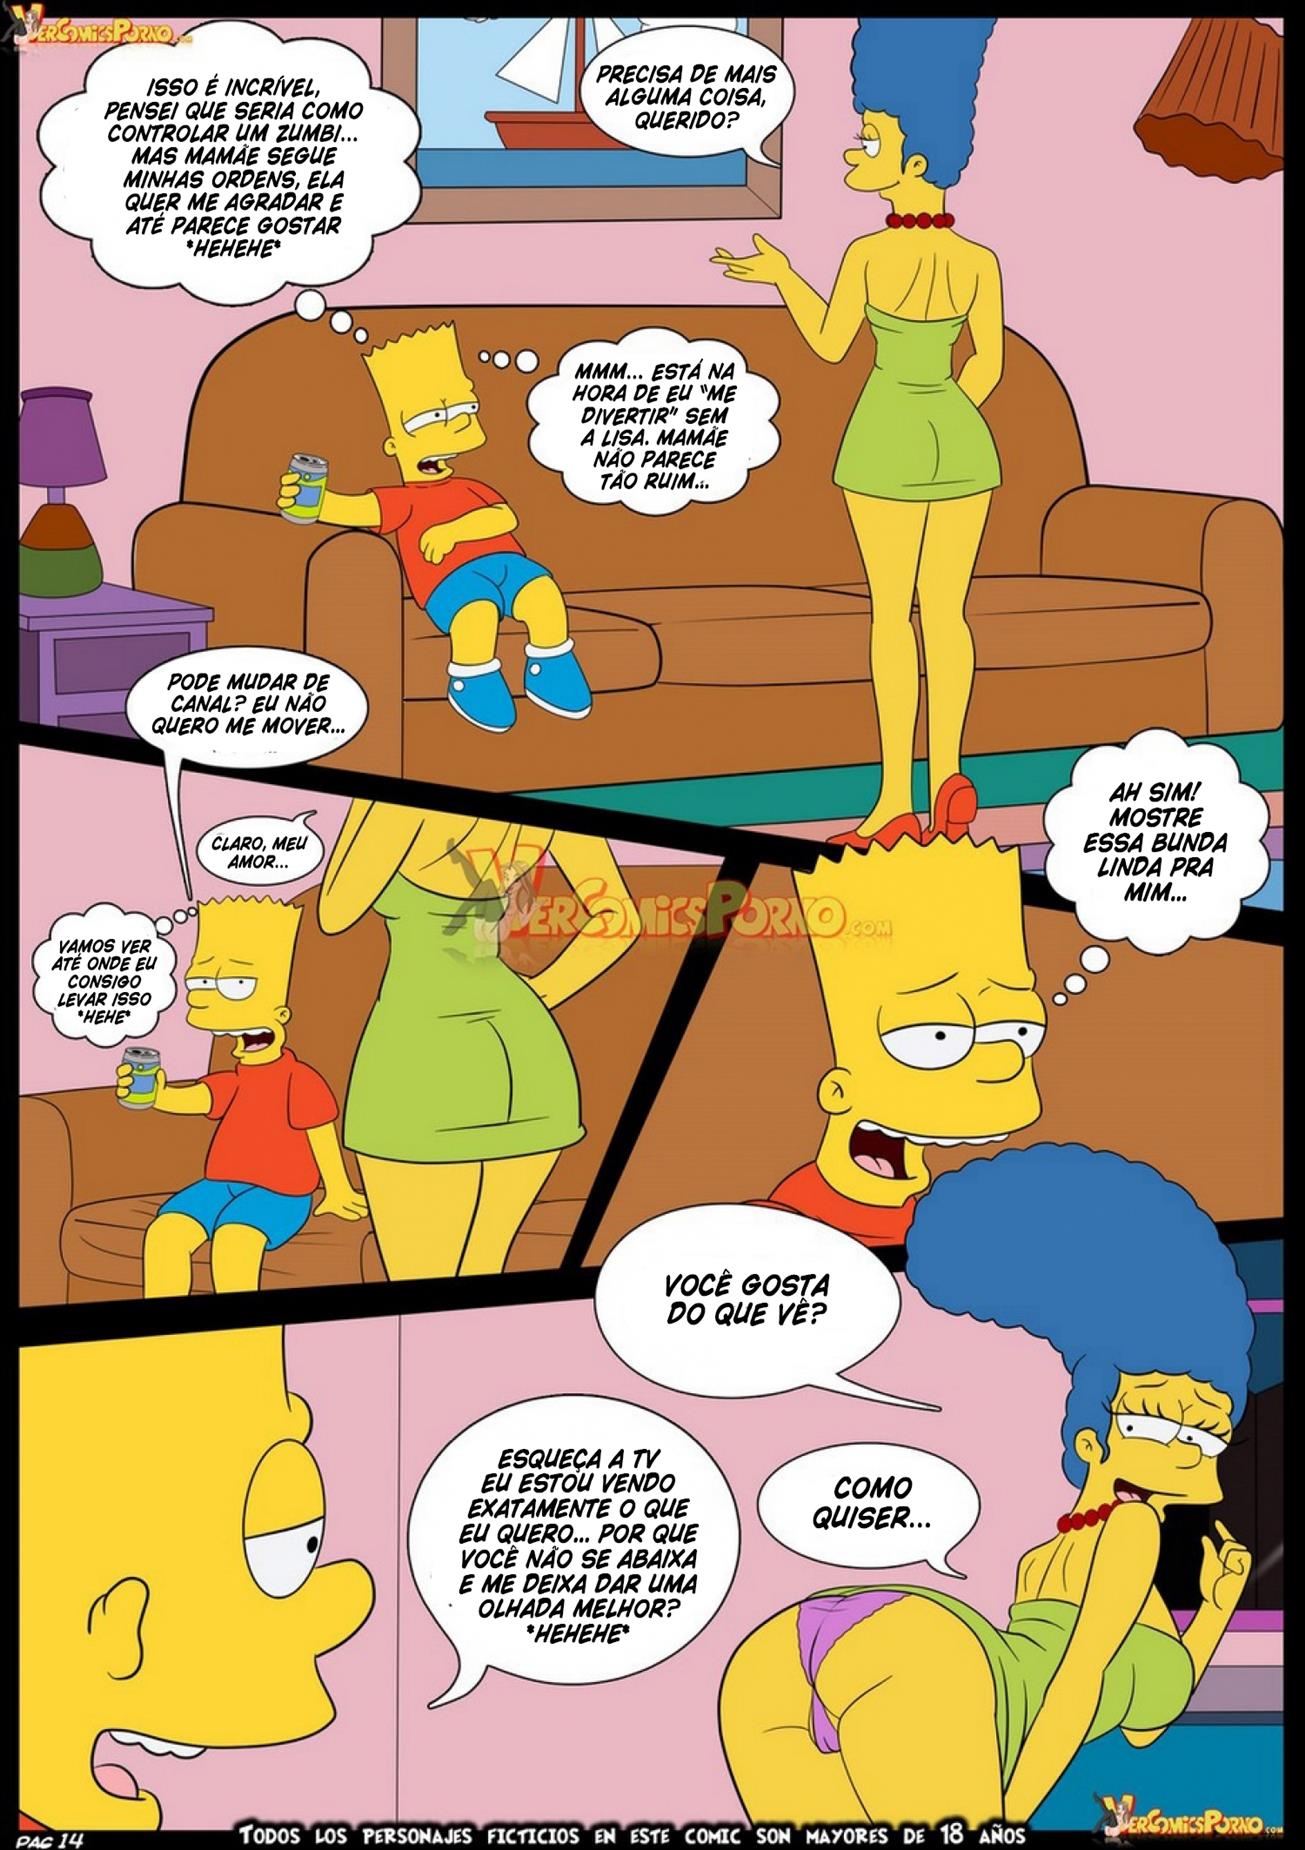 Simpson-Futurama: O controle mental - Foto 15